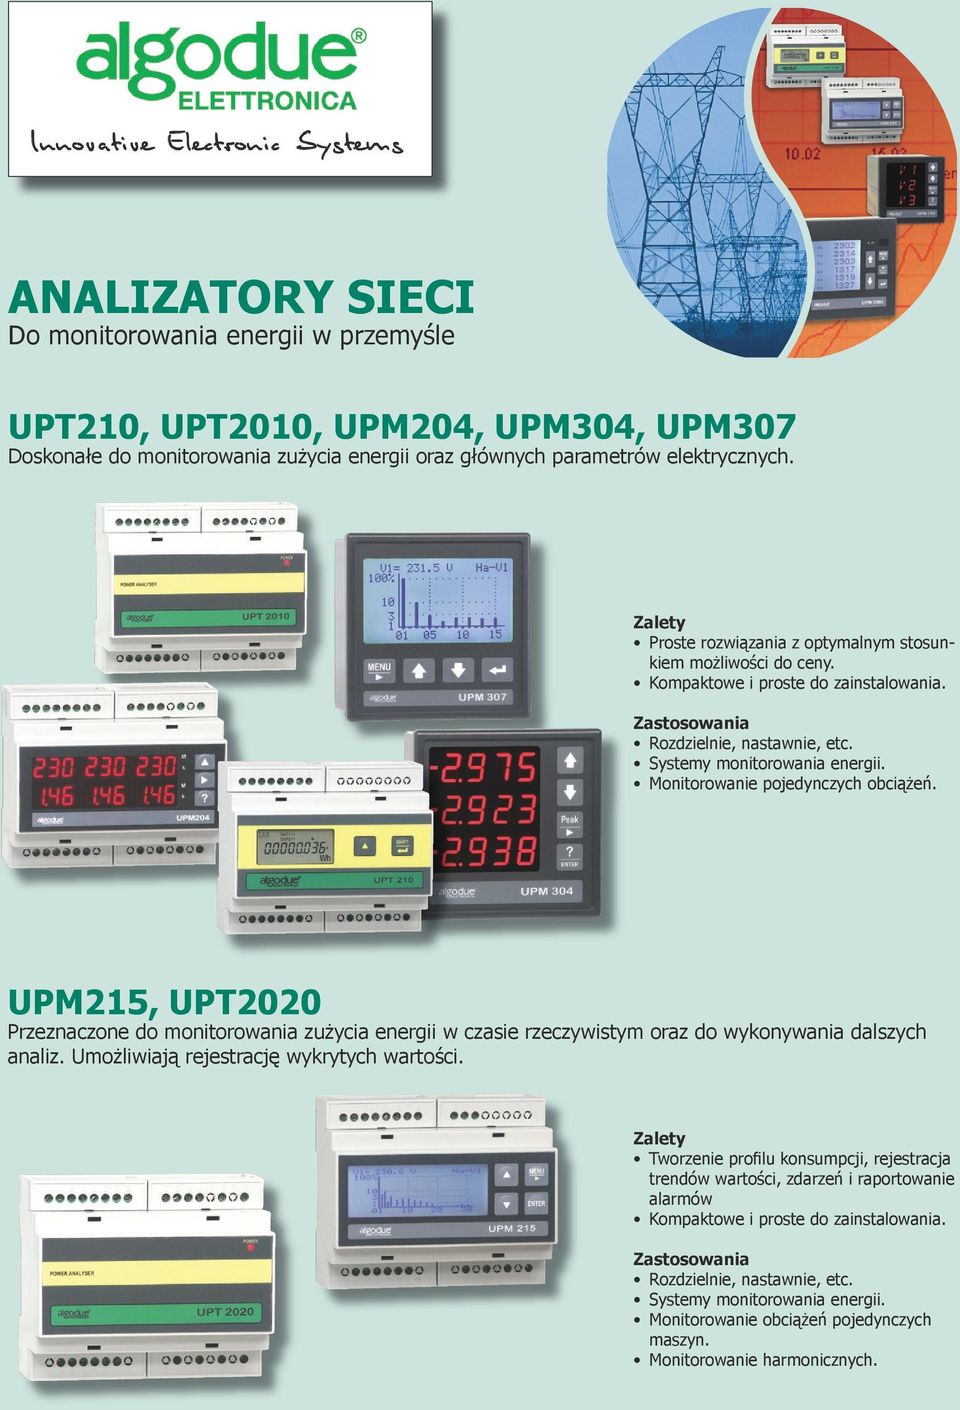 UPM215, UPT2020 Przeznaczone do monitorowania zużycia energii w czasie rzeczywistym oraz do wykonywania dalszych analiz. Umożliwiają rejestrację wykrytych wartości.